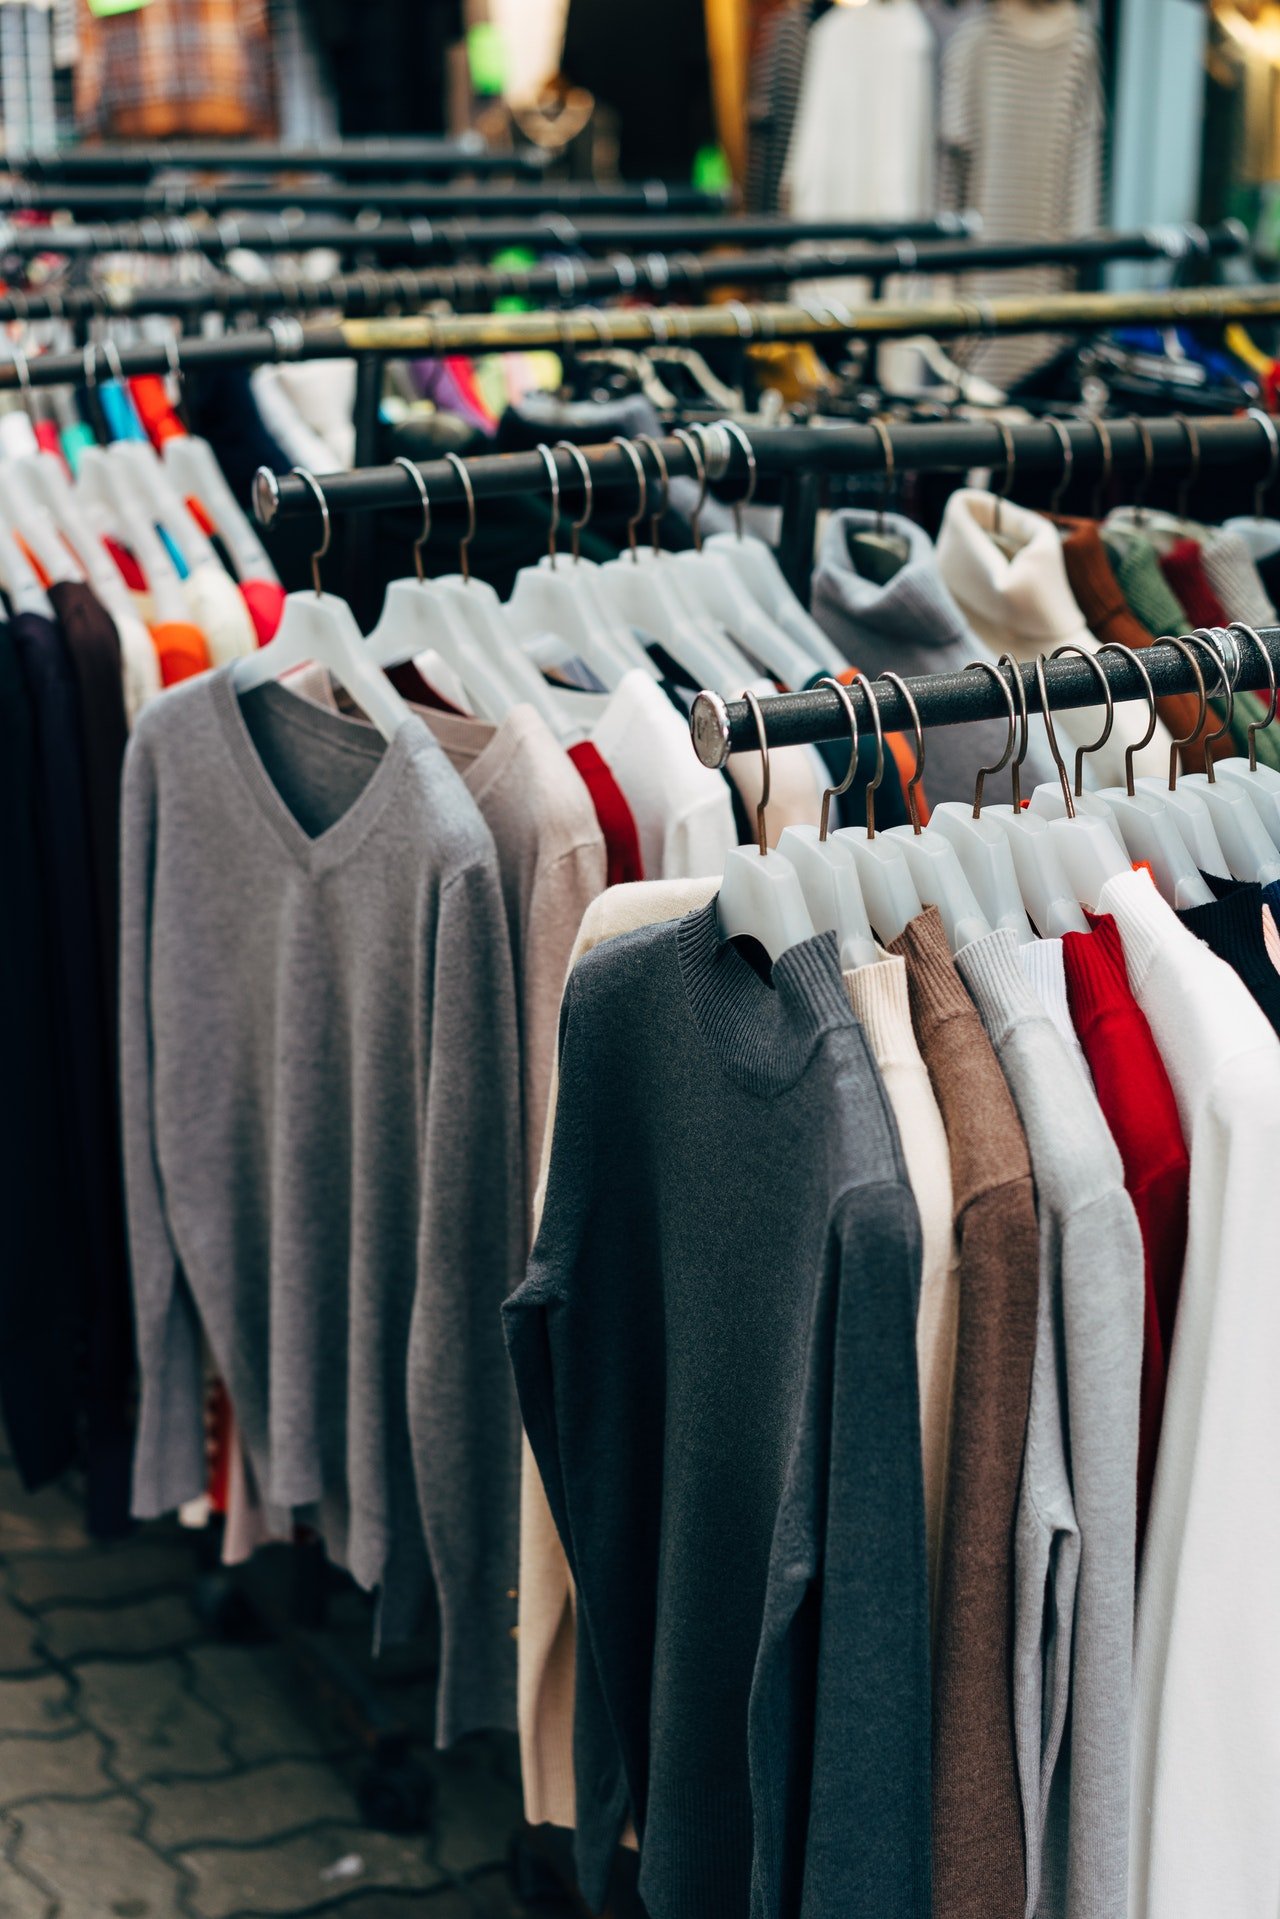 Pullover hängen an Kleiderständern | Quelle: Pexels